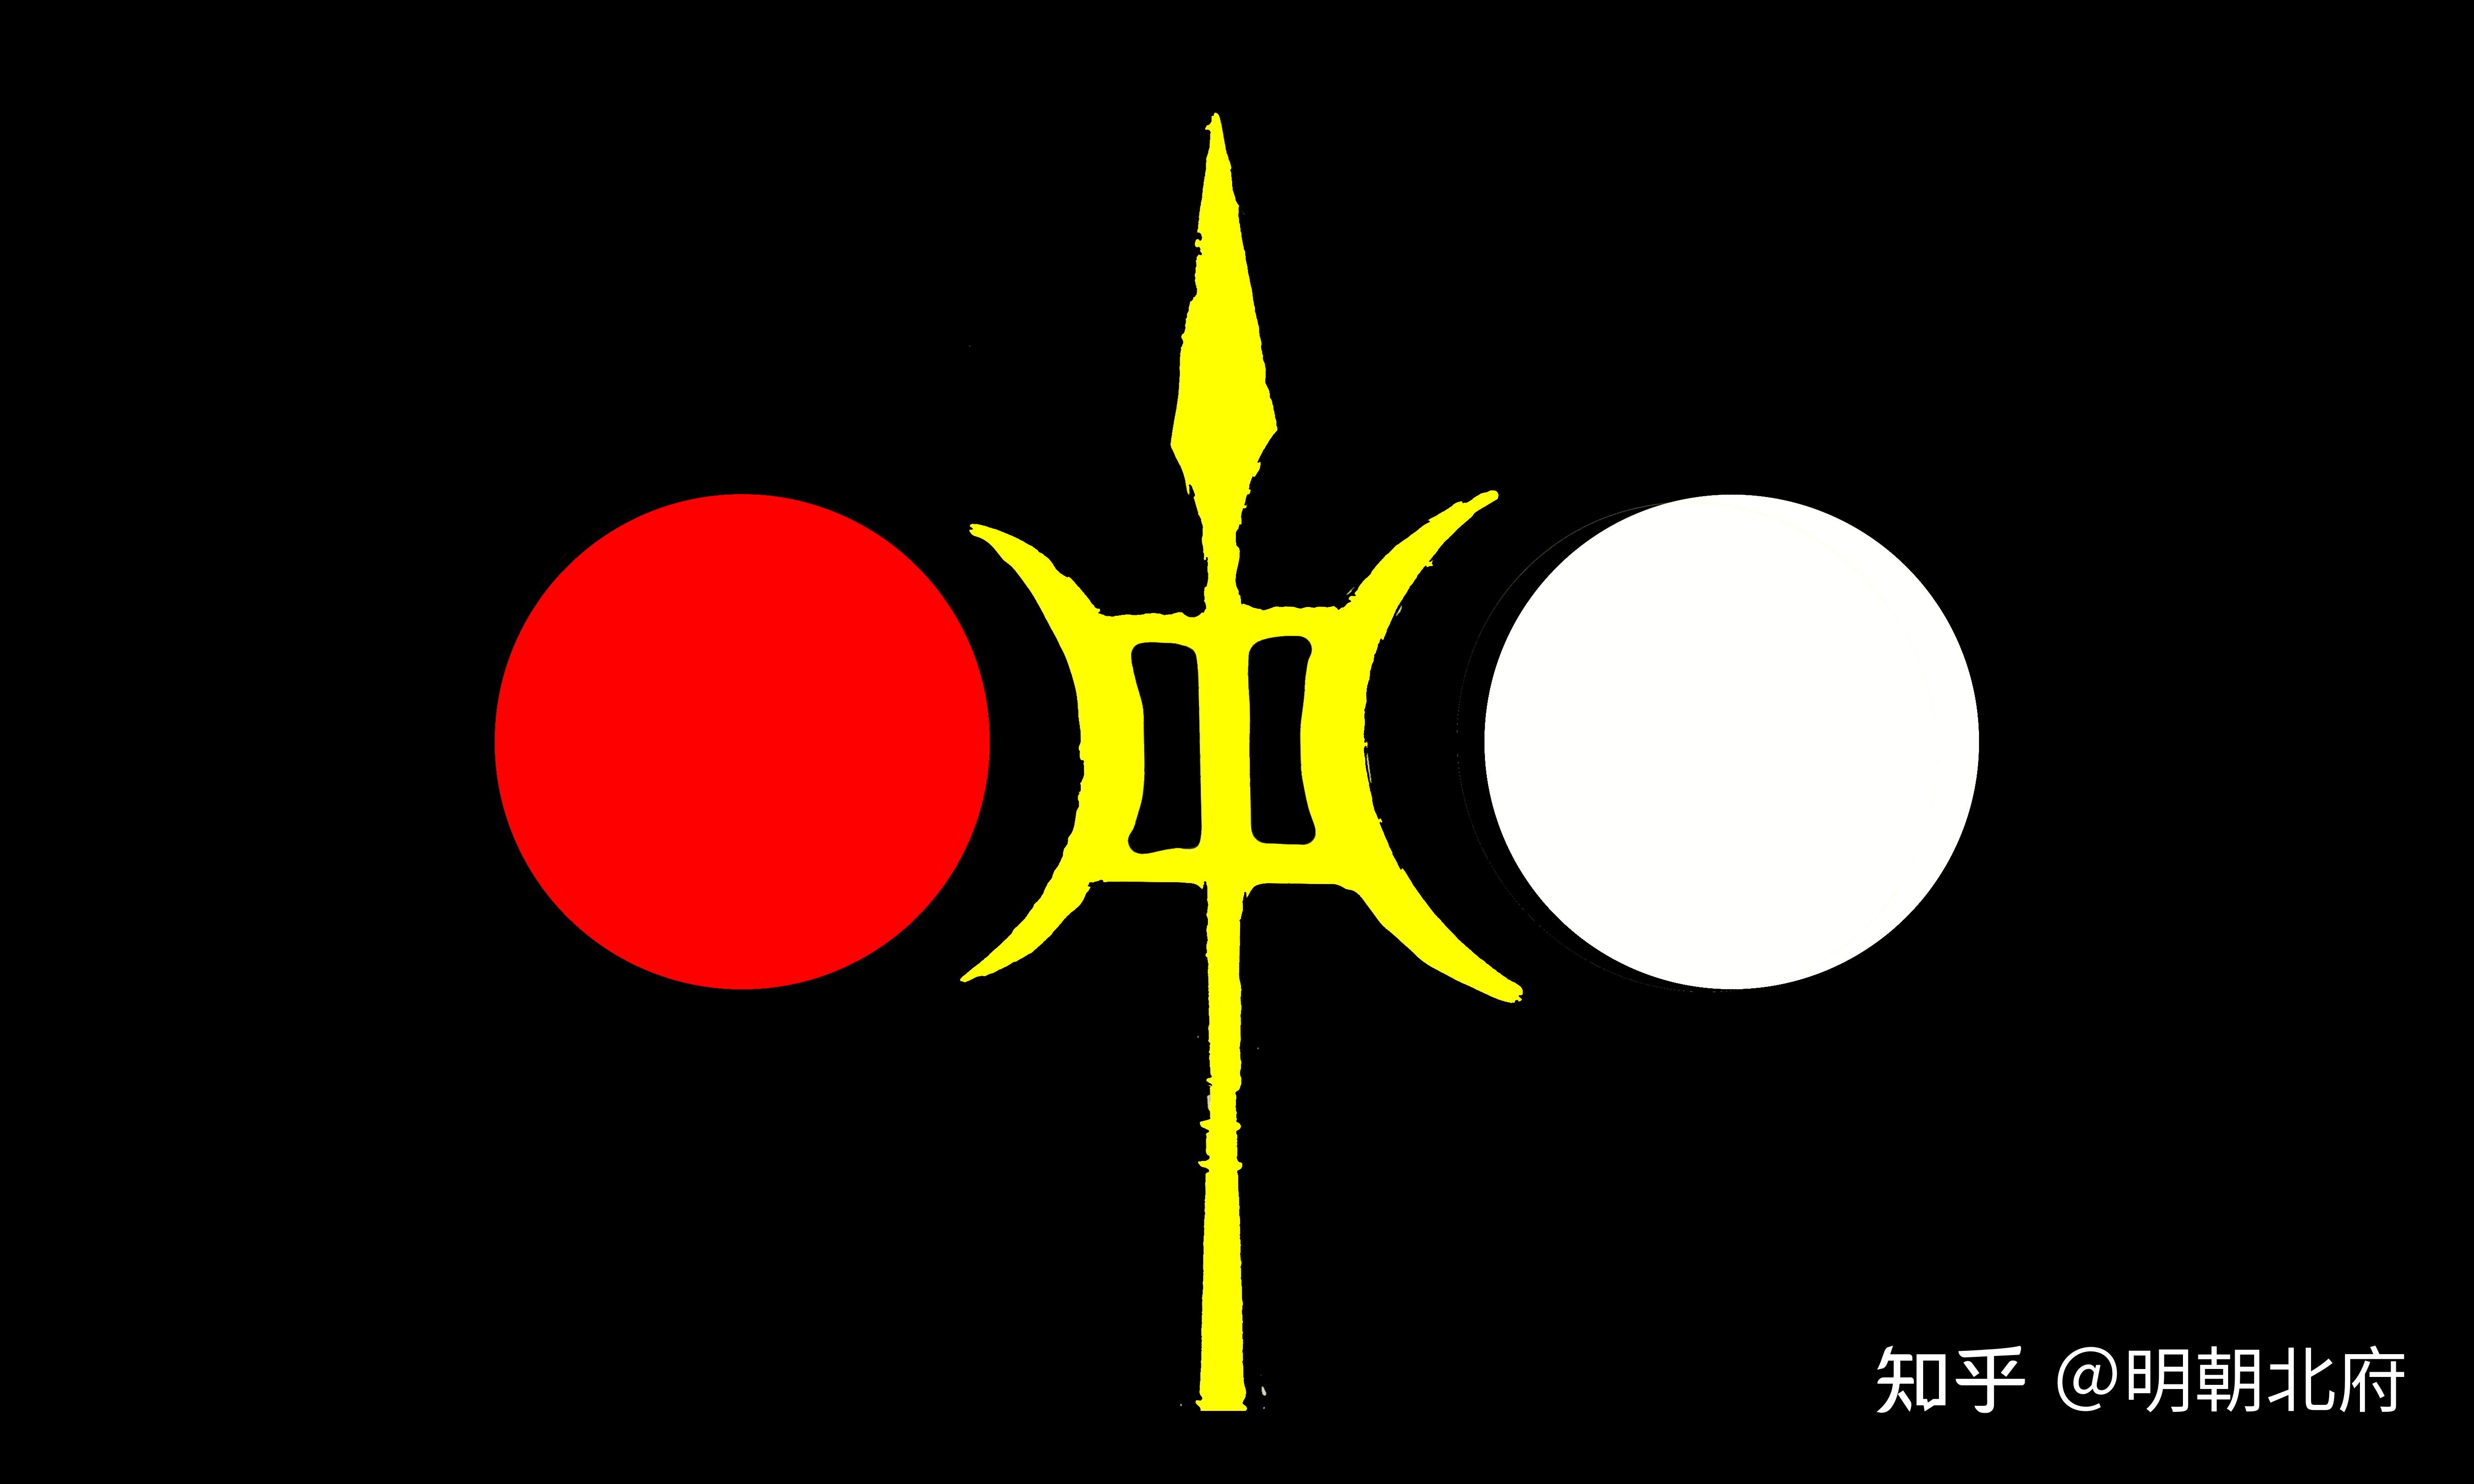 真武军旗(原型中军大纛)国旗及国家党党旗:日月旗(原型王旗太常旗)